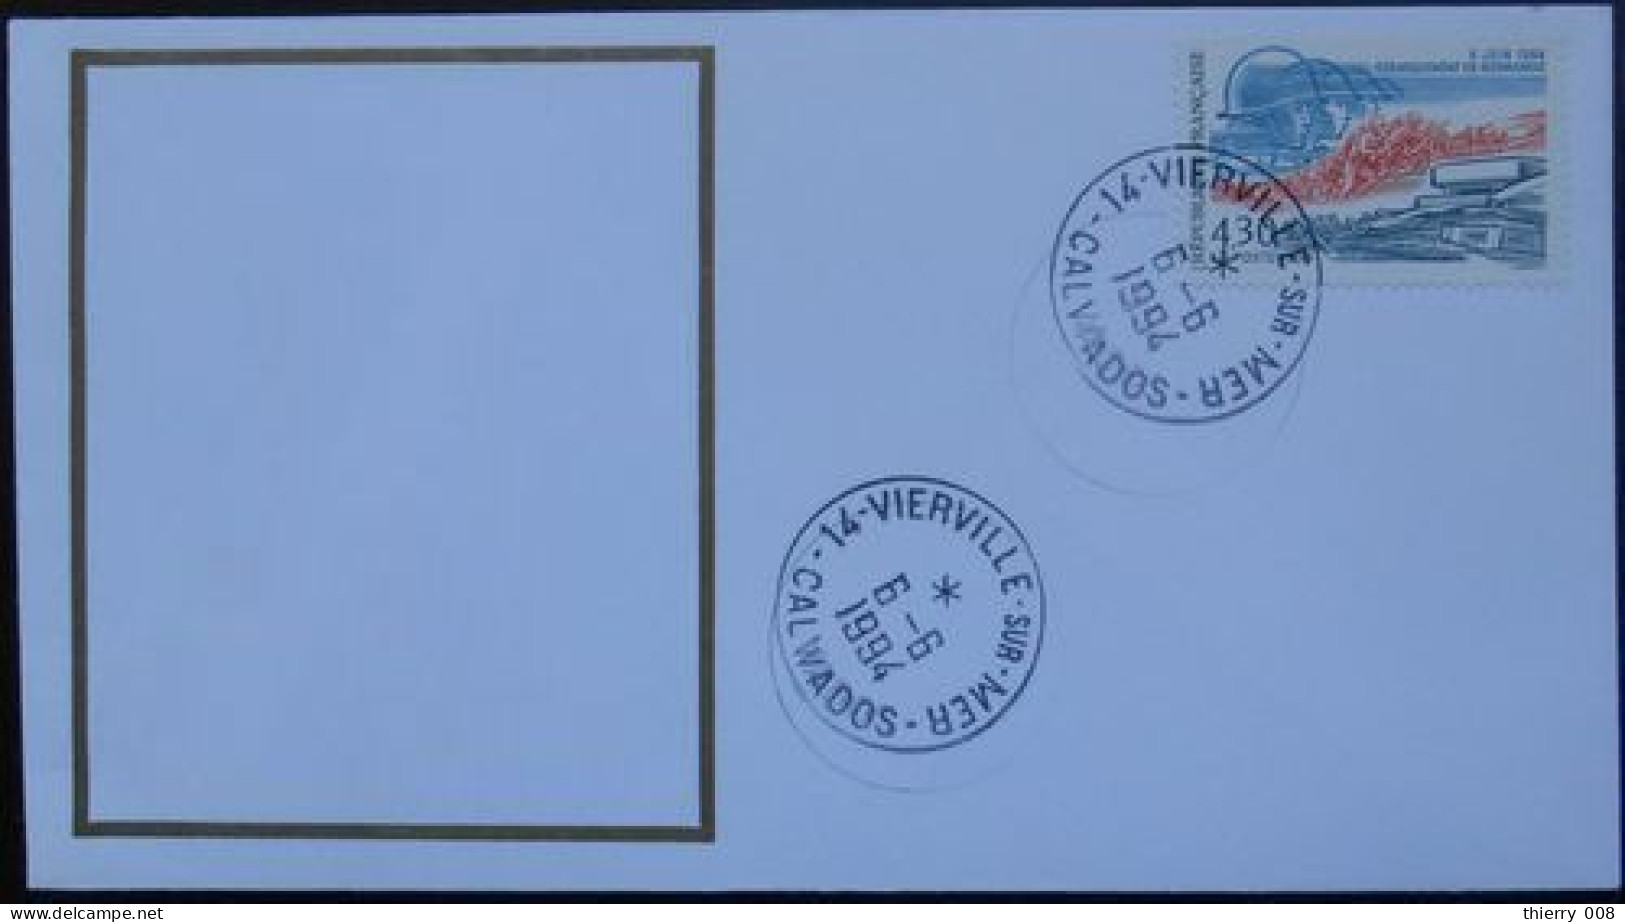 V24 Cachet Temporaire Vierville Sur Mer 14 Calvados Débarquement Libération 6 Juin 1994 - Manual Postmarks